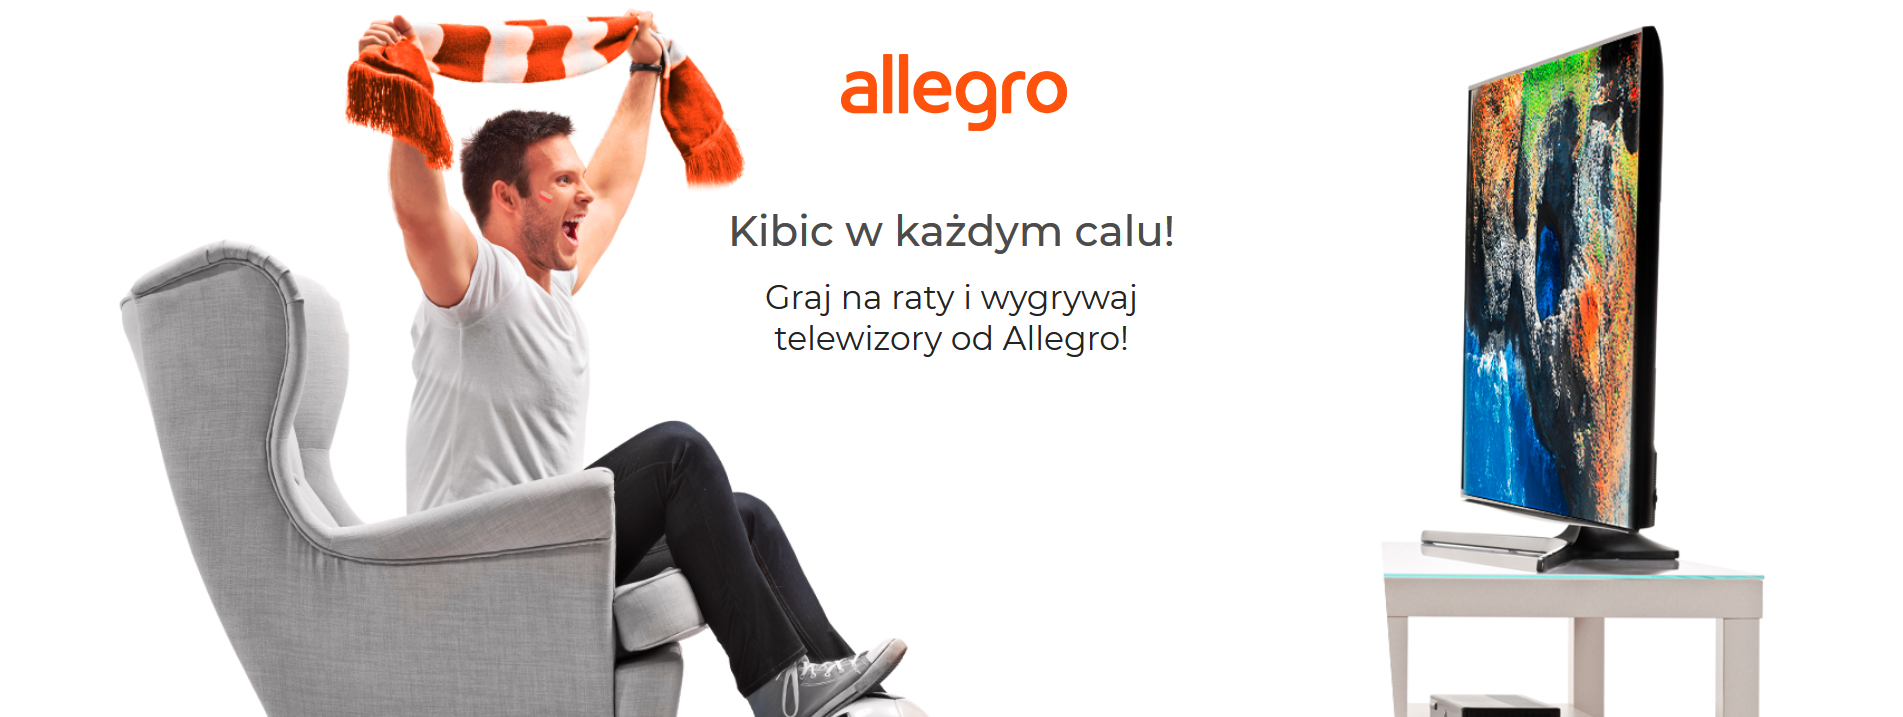 Wygraj telewizor od Allegro! Zobacz hasło